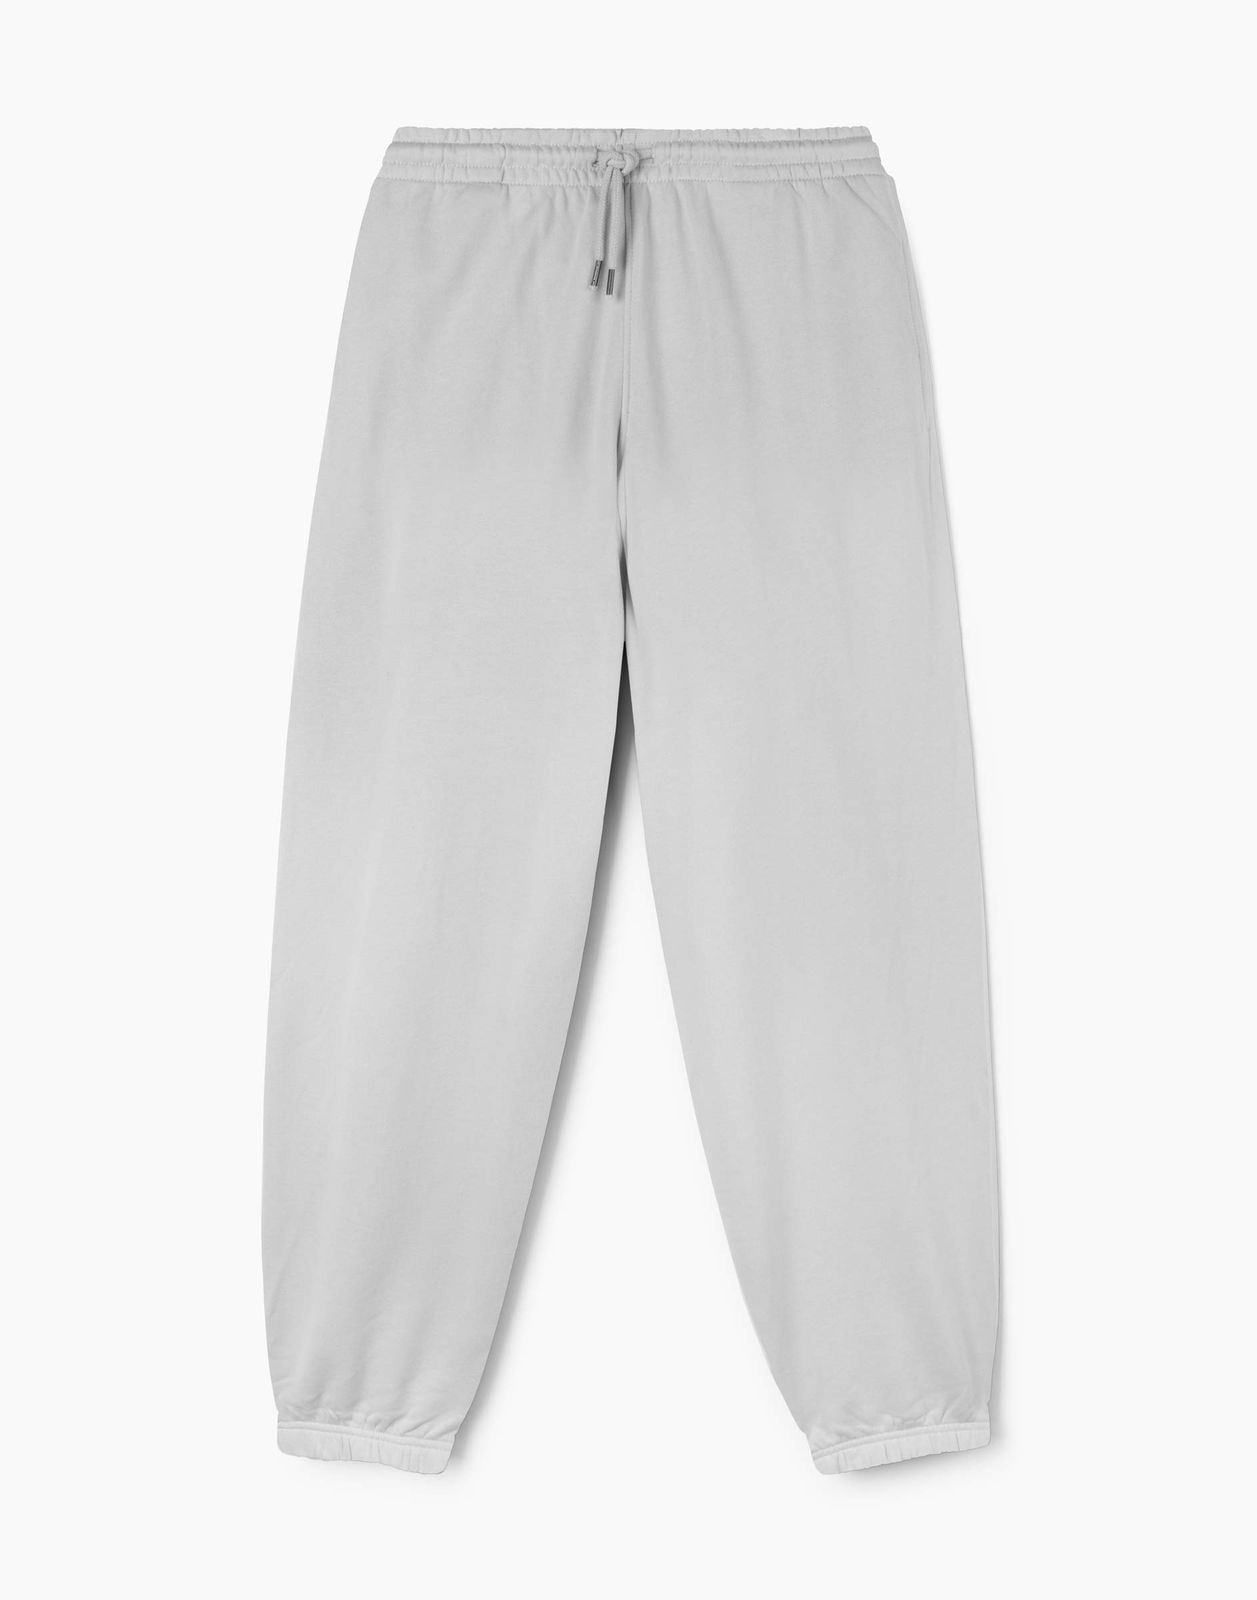 Спортивные брюки мужские Gloria Jeans BAC013026 светло-серый M/182